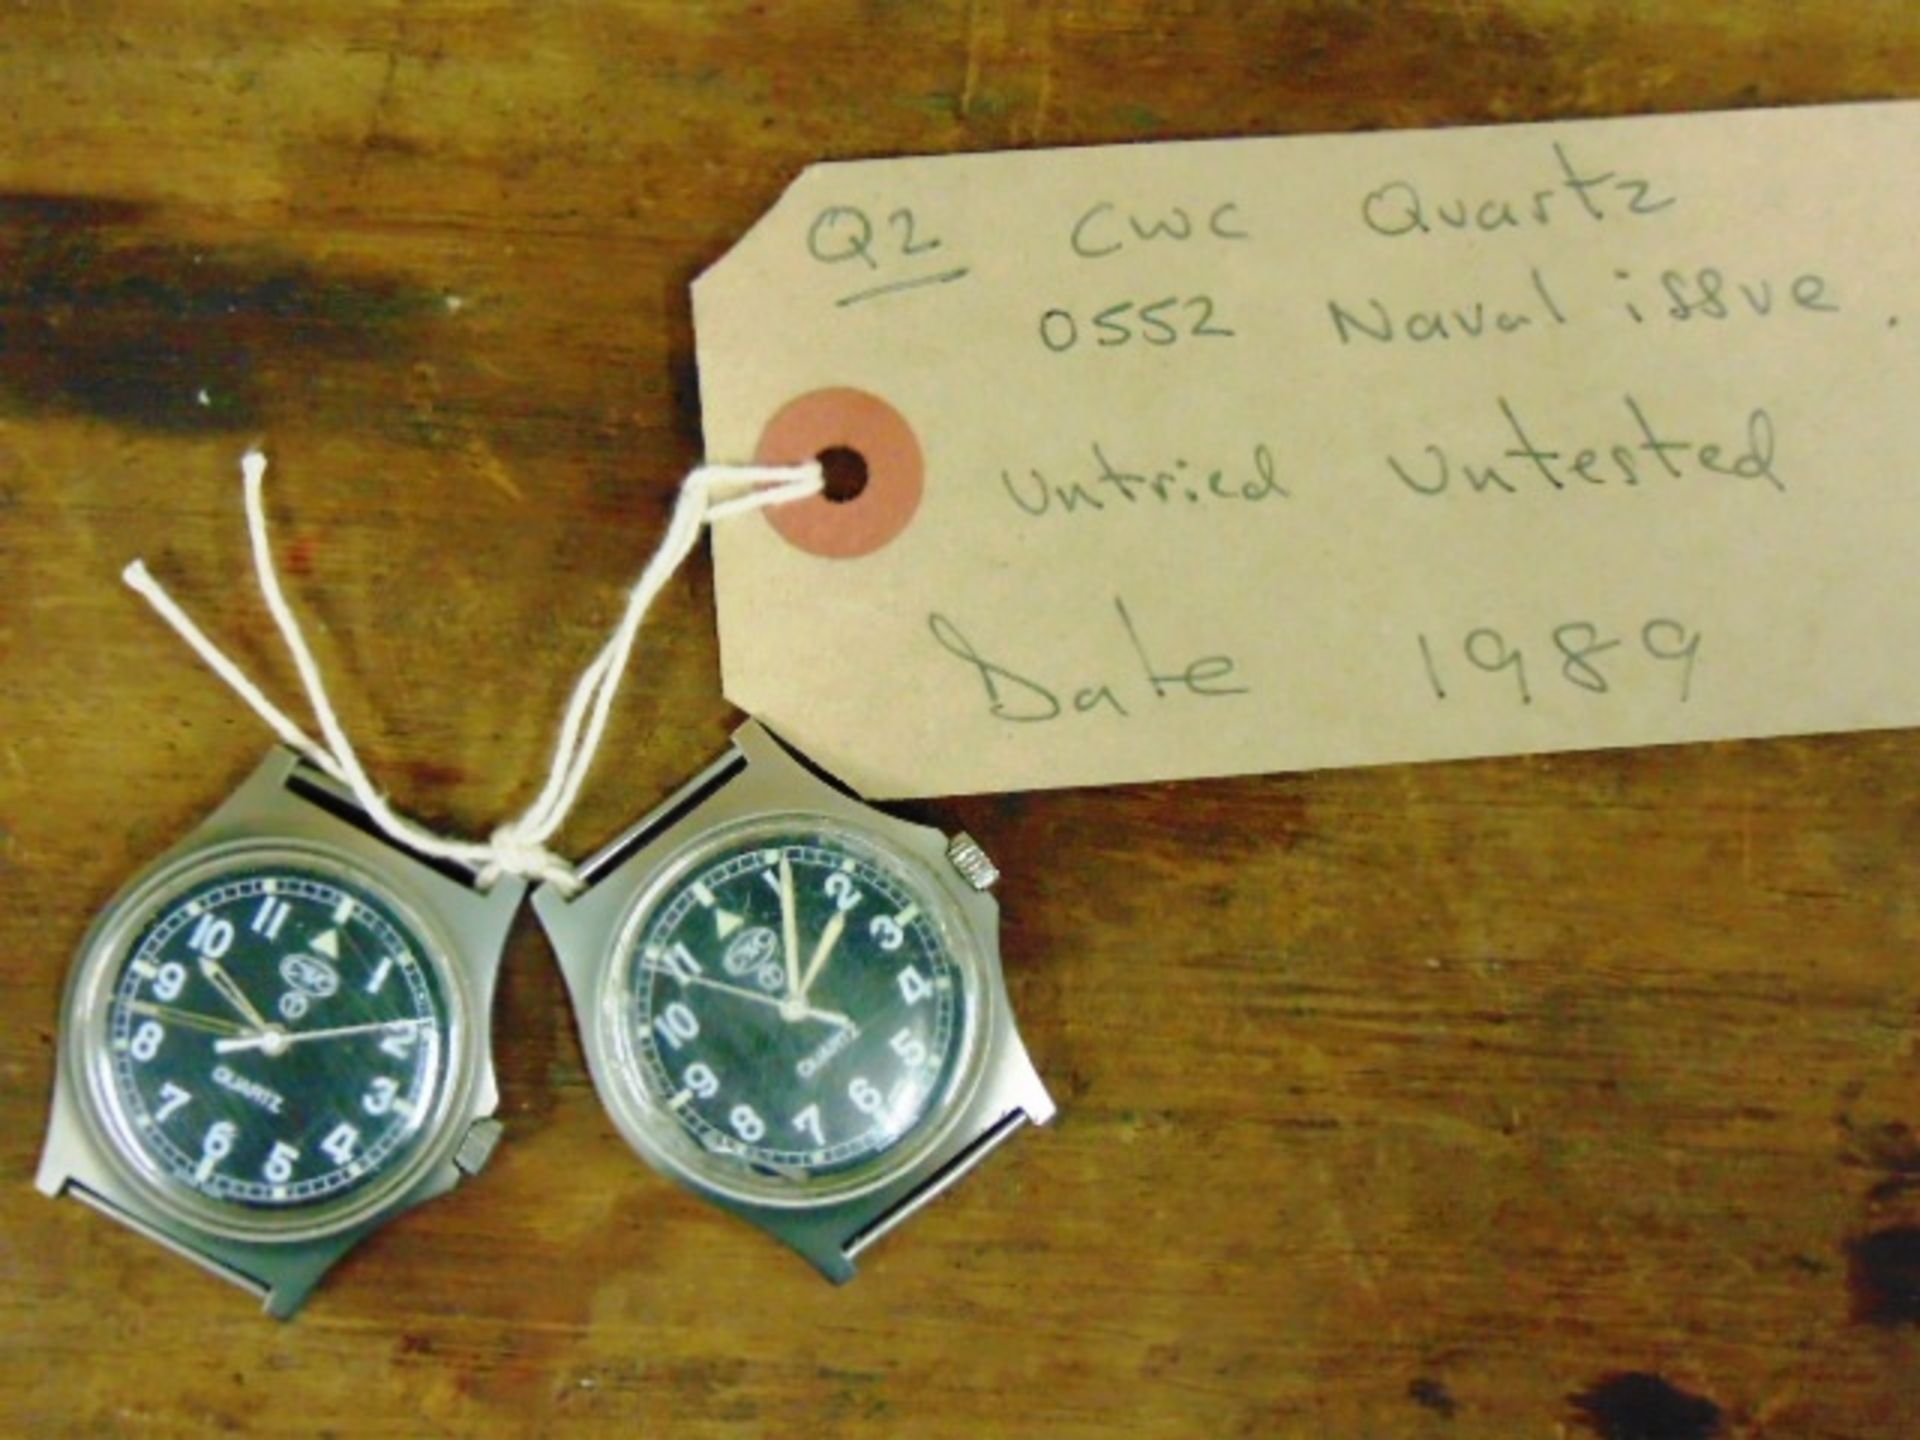 2 x 0552 Naval Issue CWC quartz wrist watches